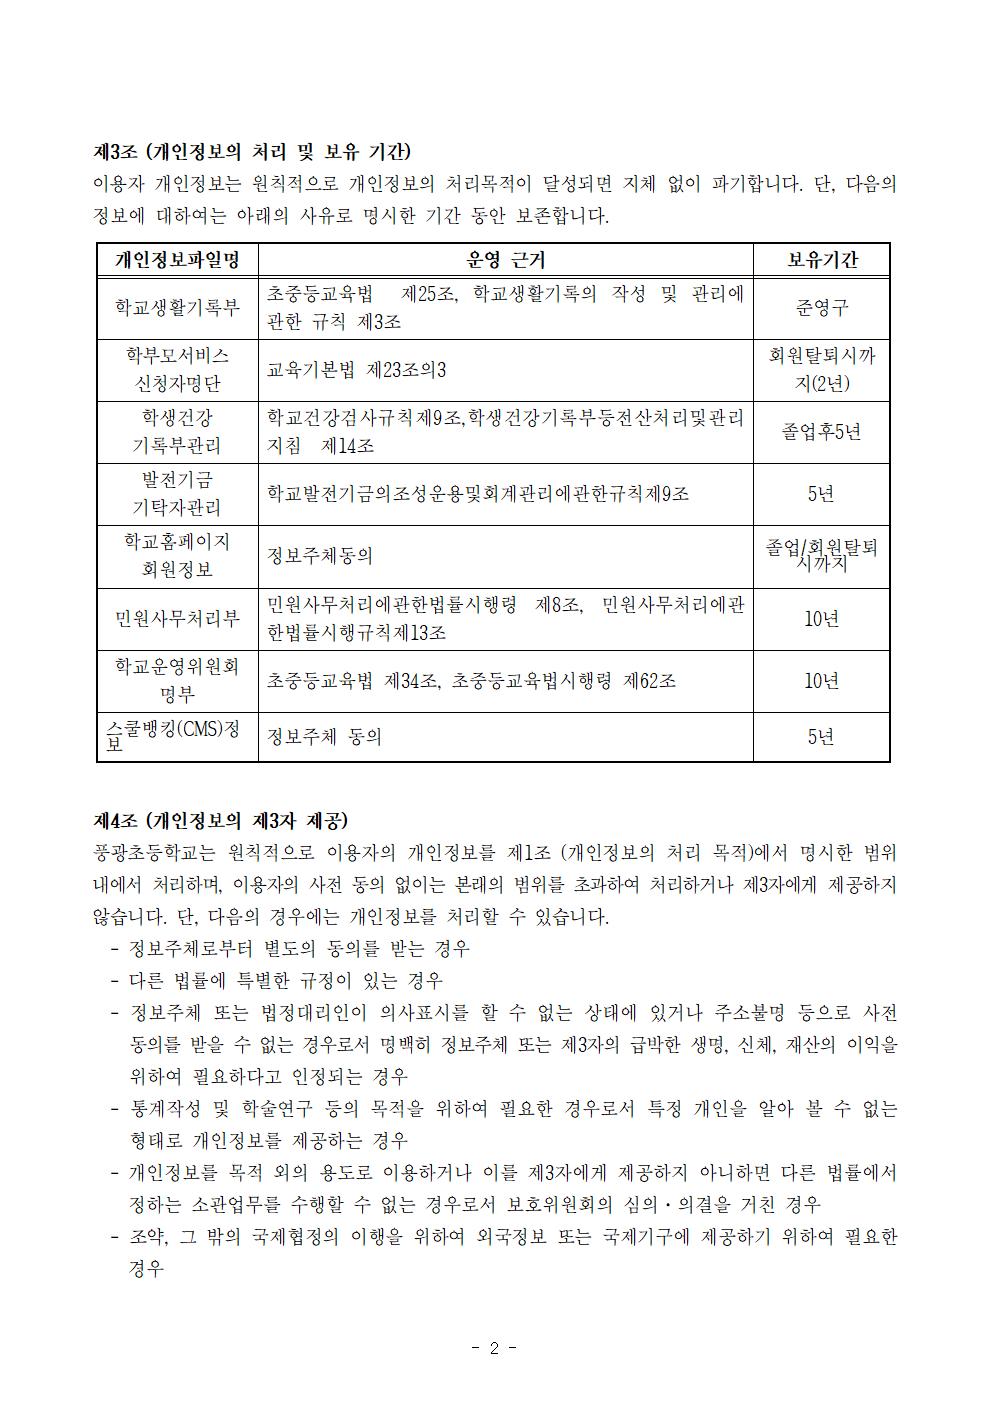 2019. 풍광초등학교 개인정보 처리방침(9.1002